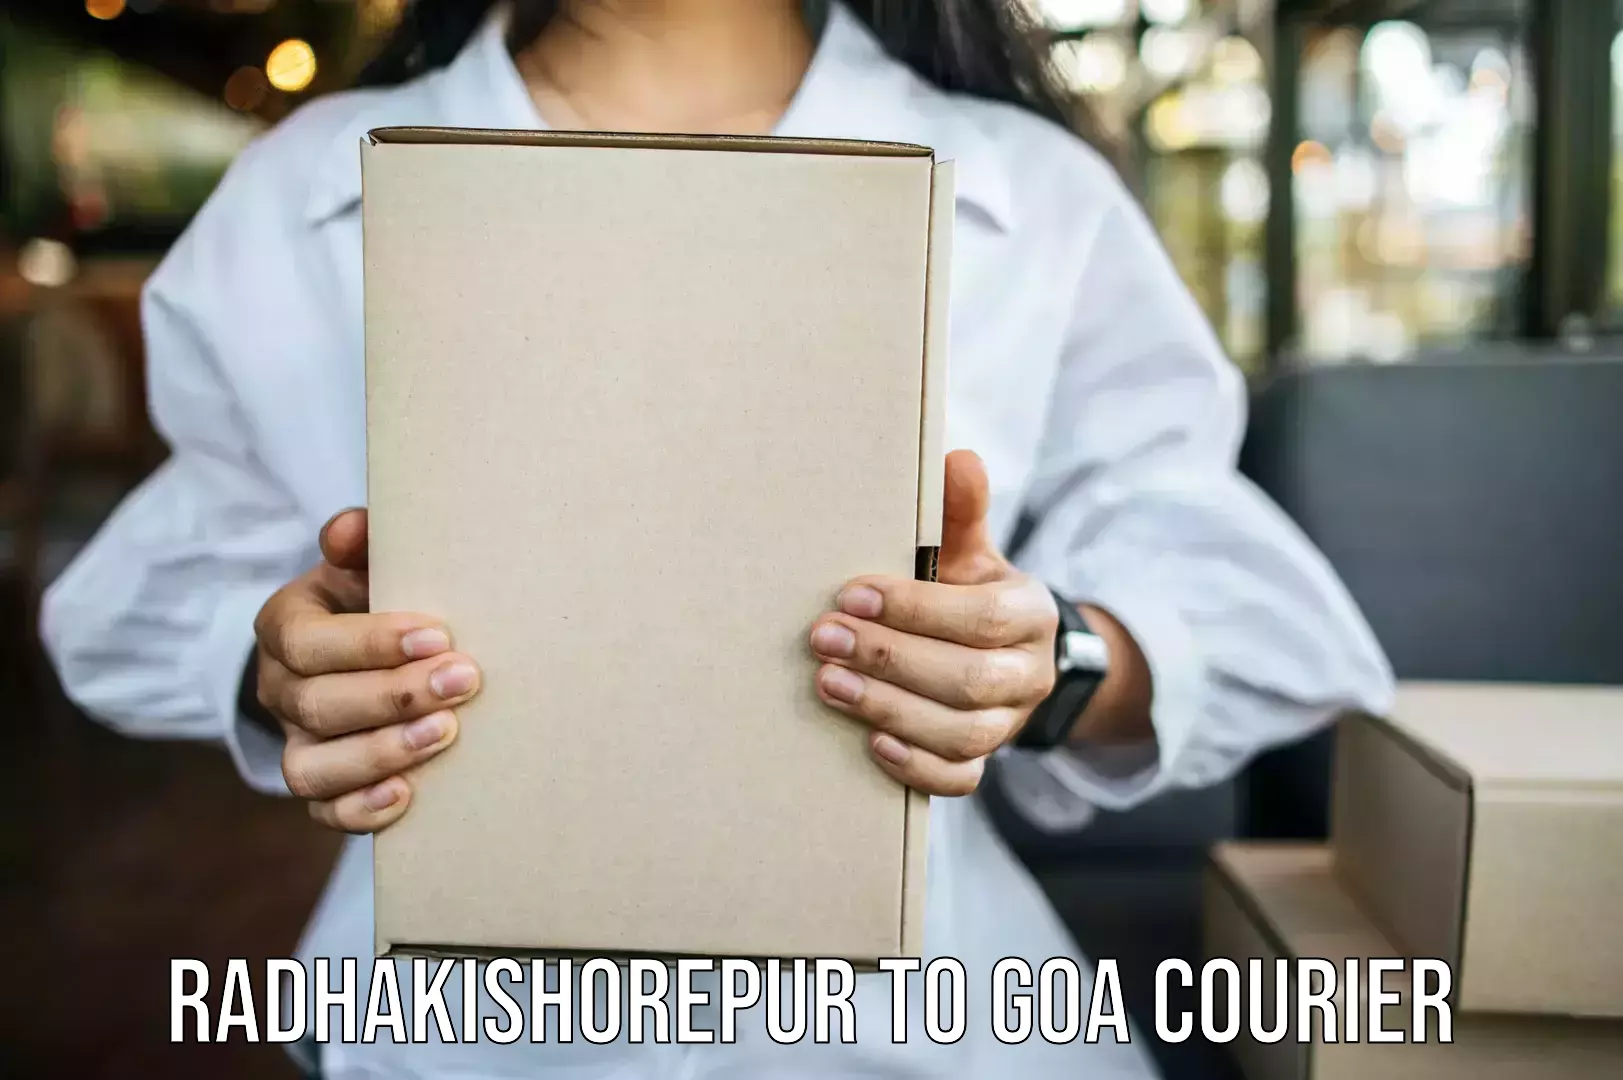 Efficient moving company Radhakishorepur to IIT Goa